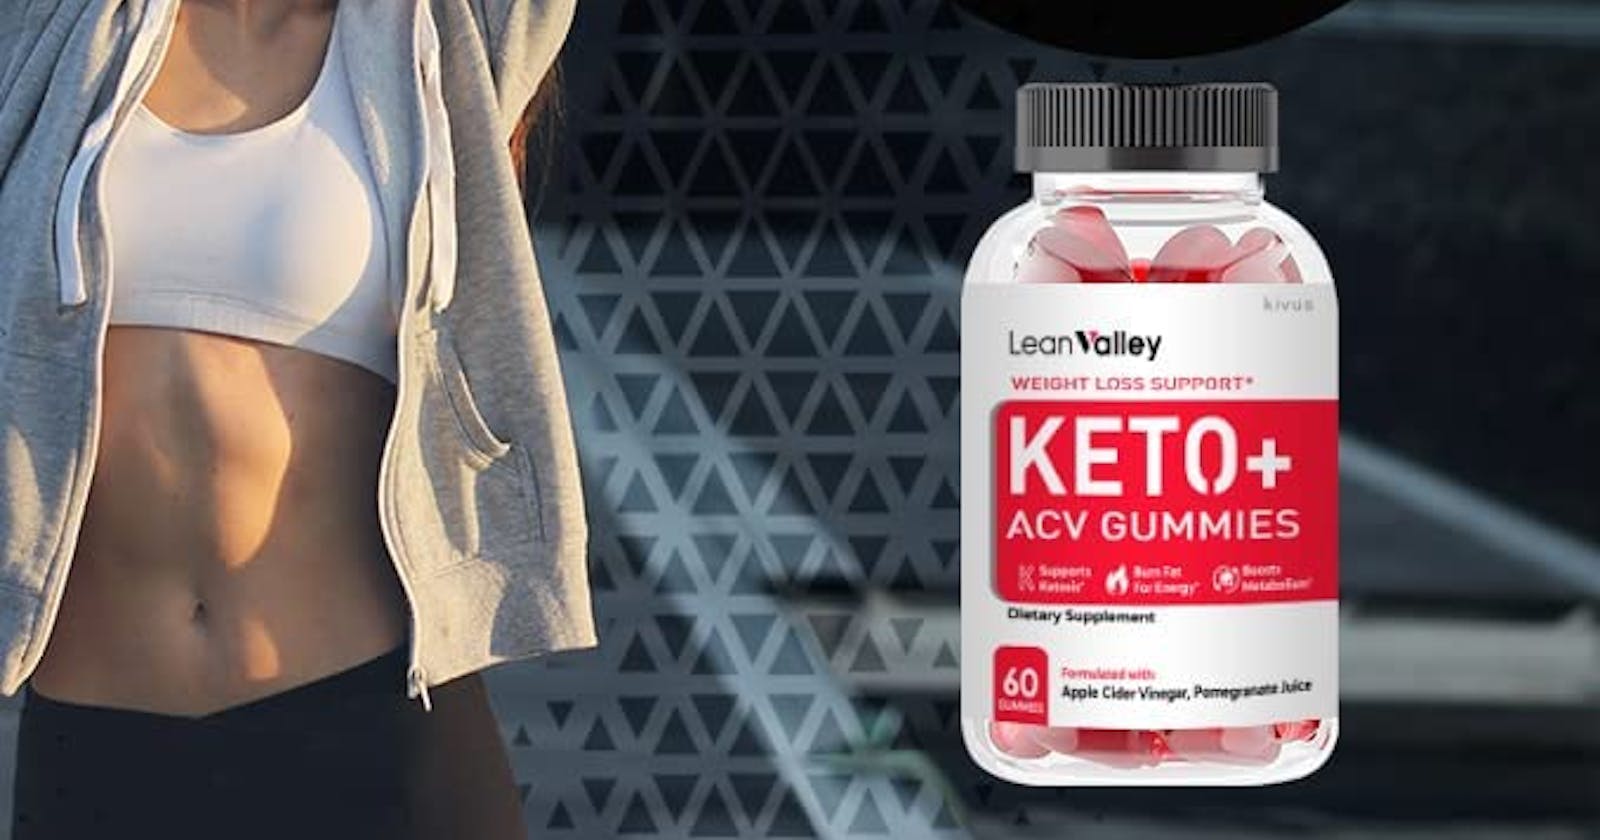 Leon Valley Keto Gummies : Is It Legit Fat Burning Pills?